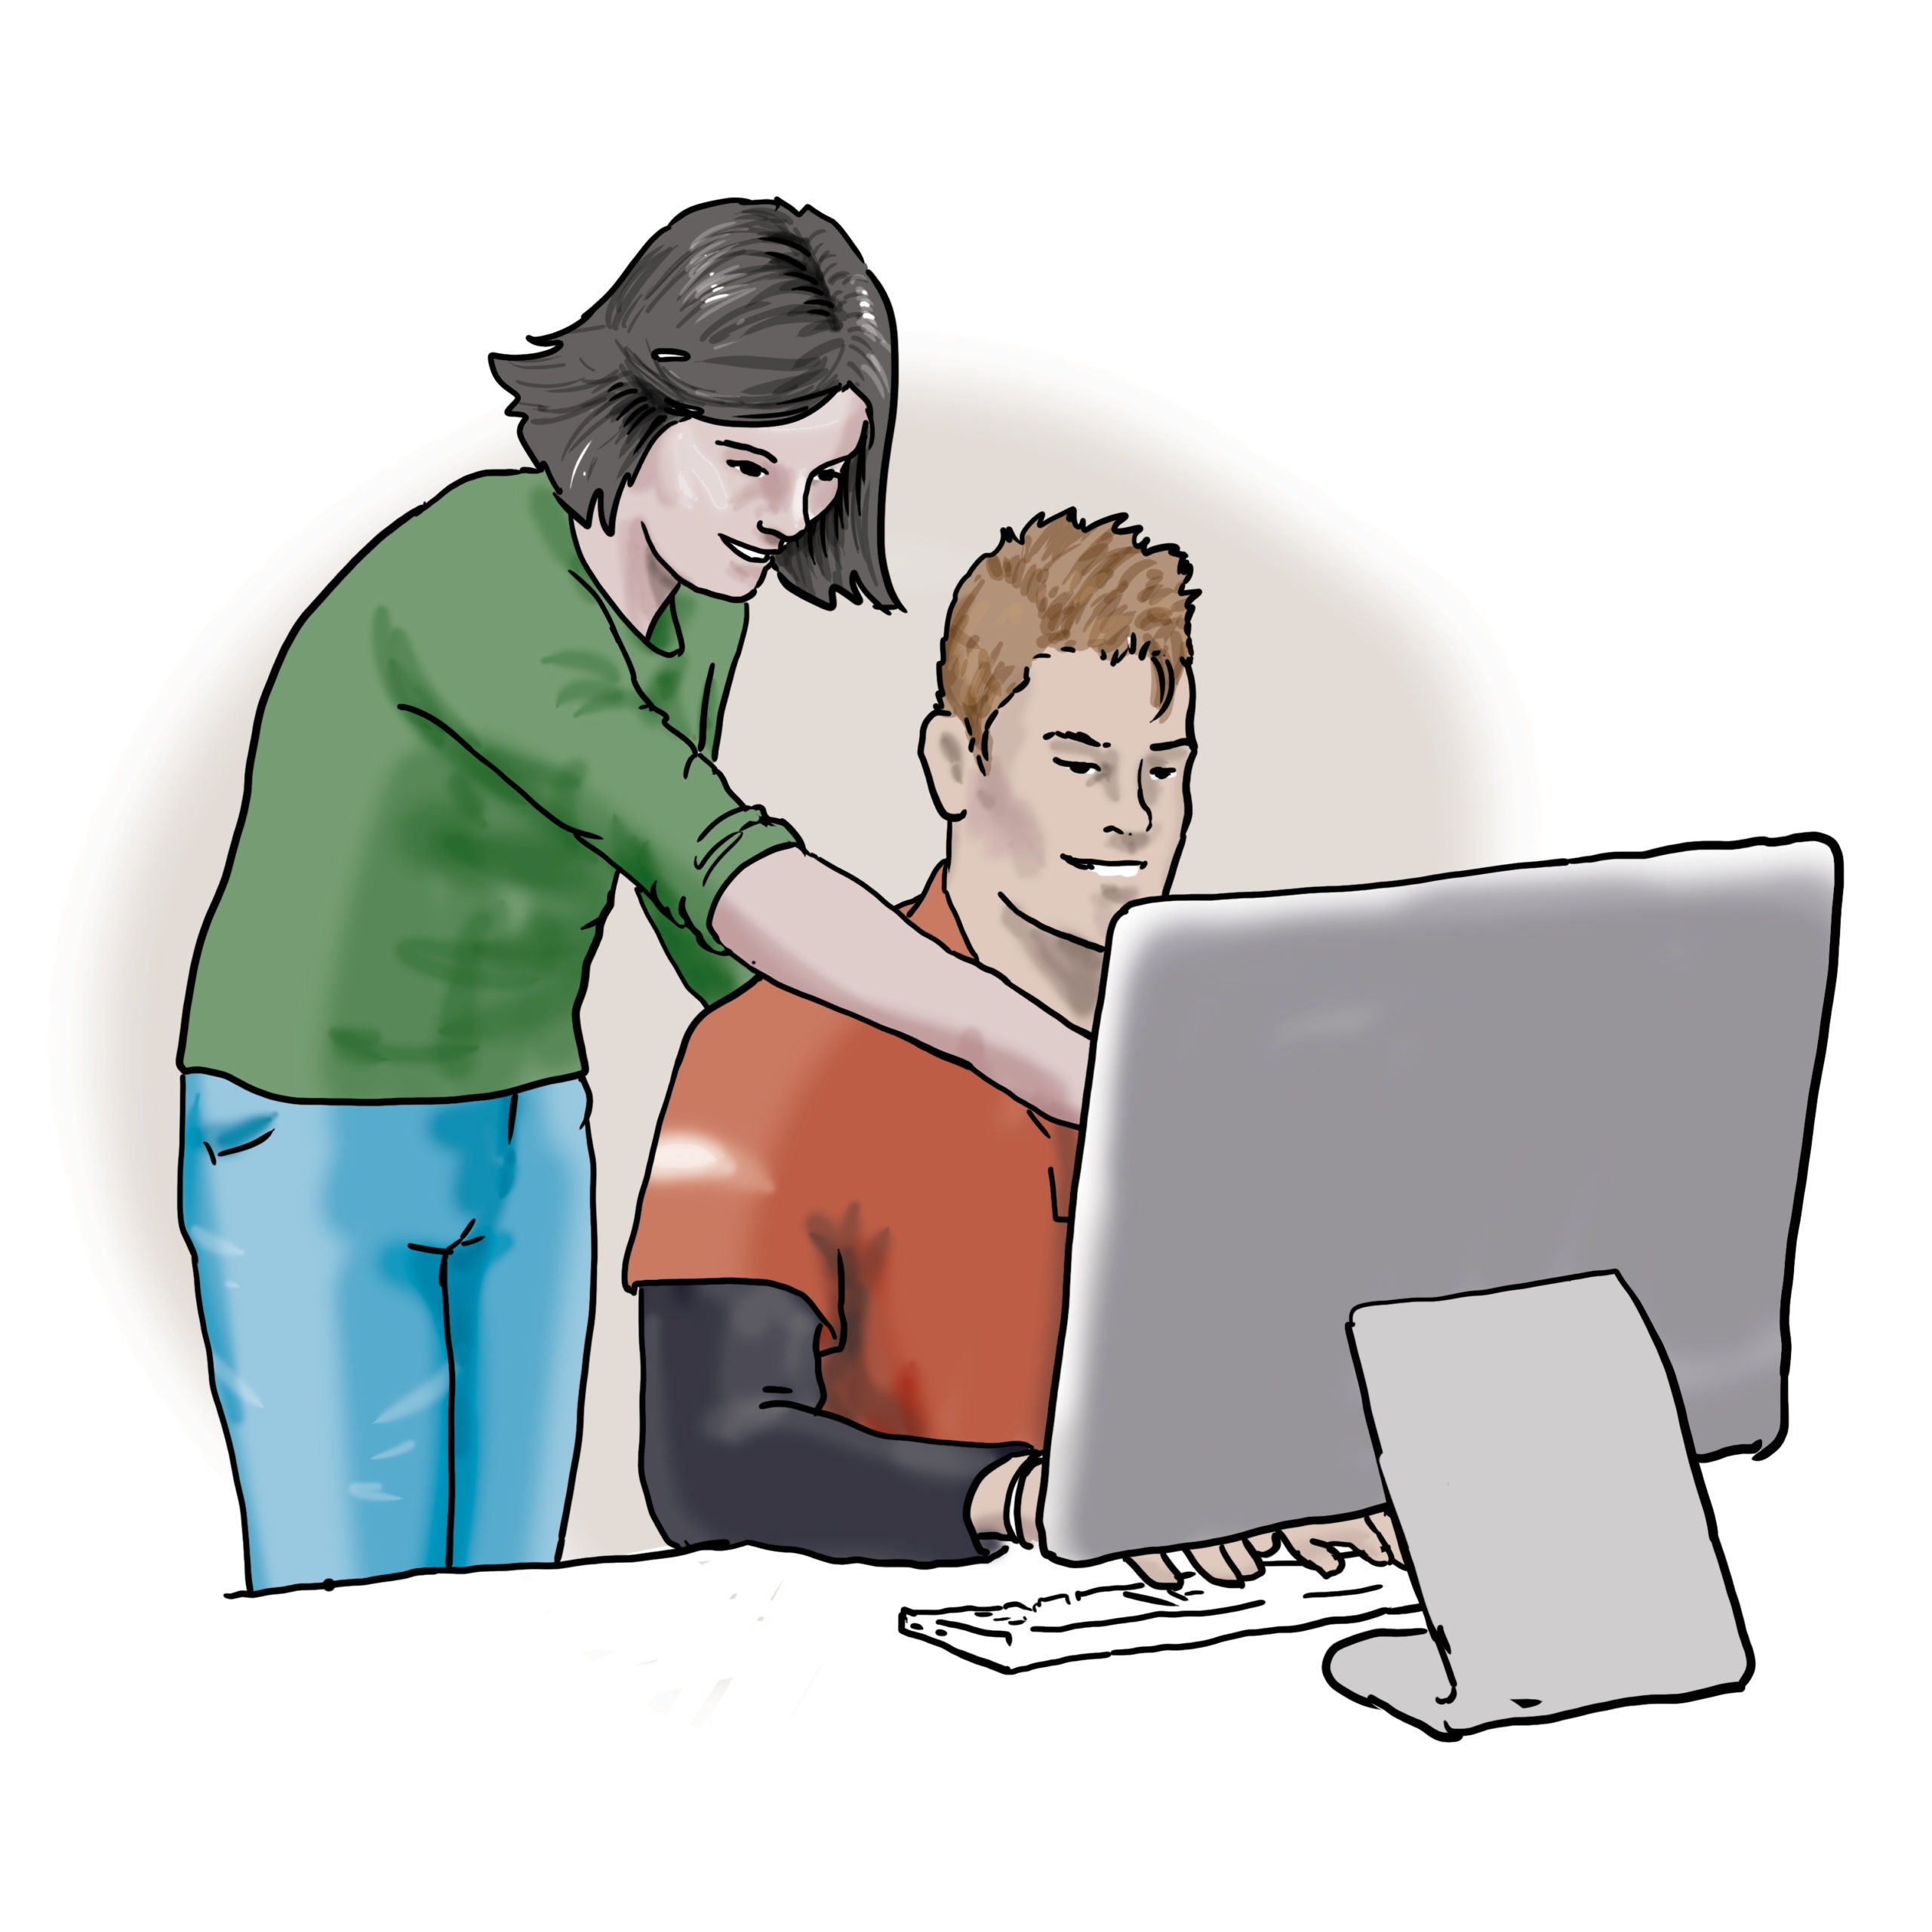 Das Bild zeigt zwei Menschen. Sie schauen gemeinsam auf einen Computerbildschirm.